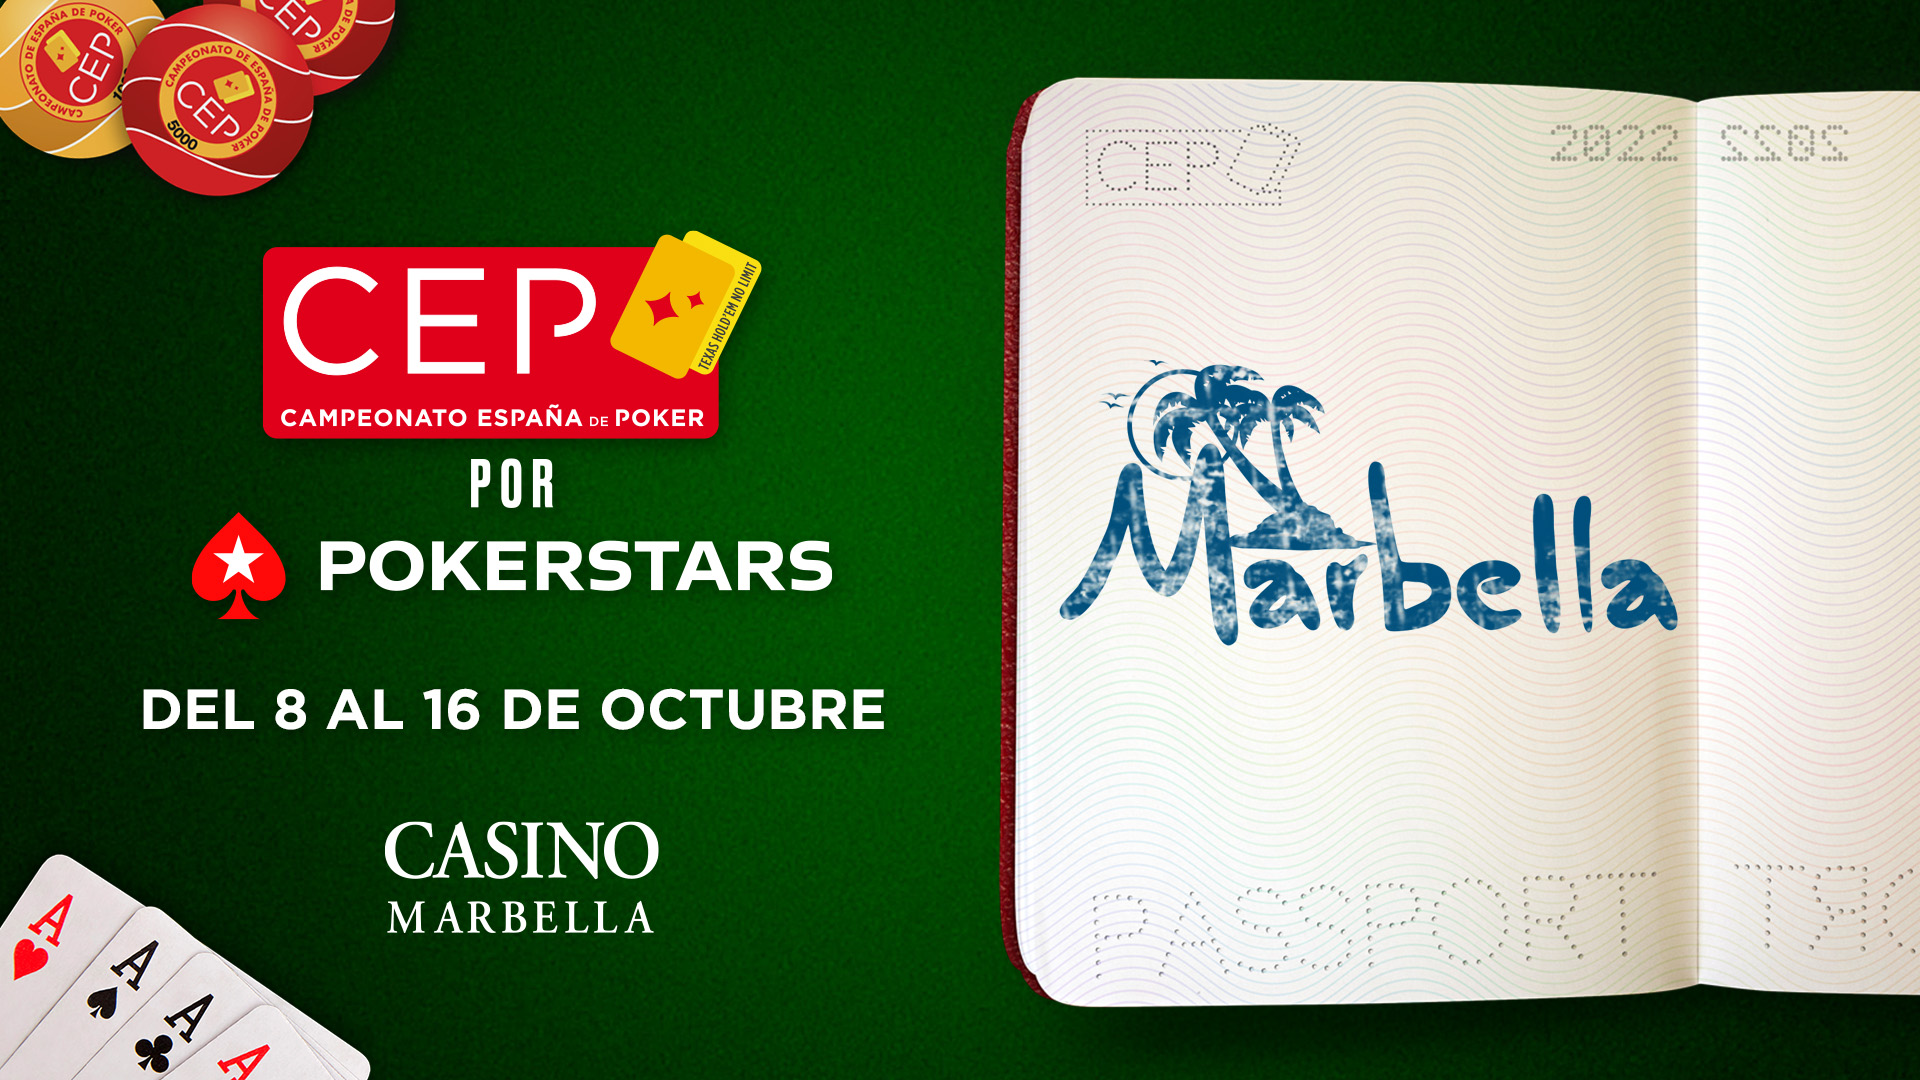 Marbella, próxima parada del Campeonato de España de Poker por PokerStars